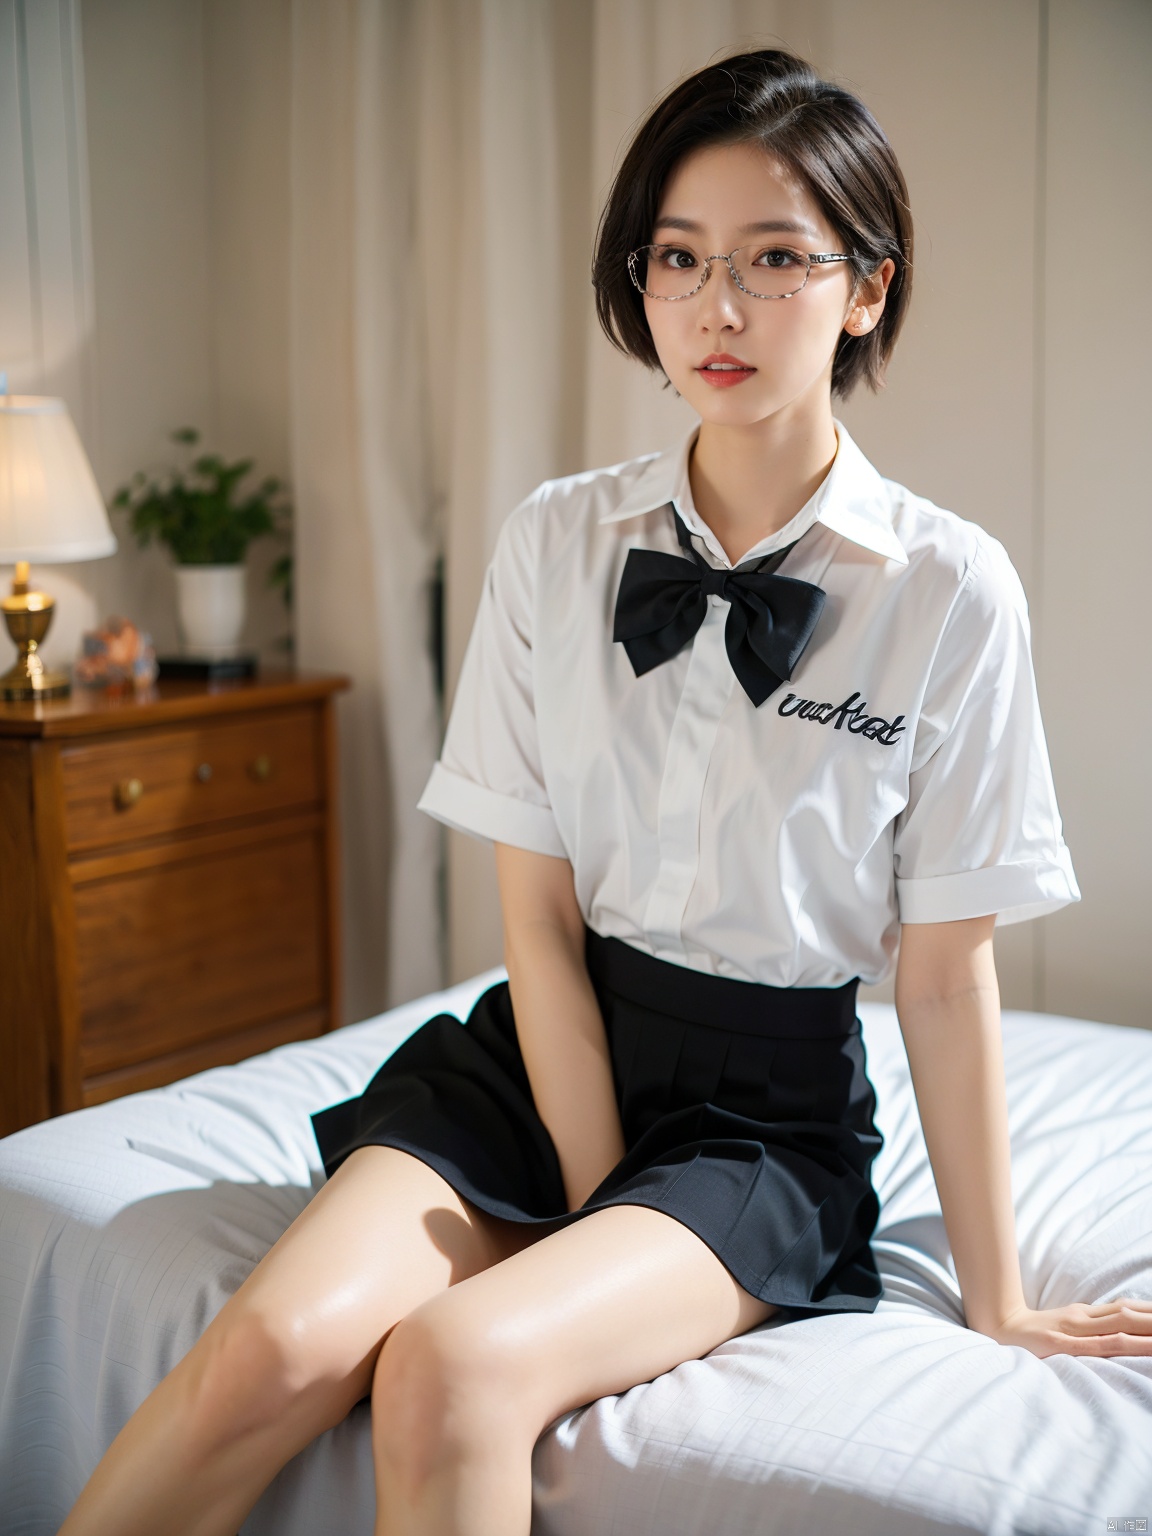  Enhanced, masterpiece, 16K, JK, 1 girl, glasses, short hair, school uniform, skirt, sitting on bed,:)